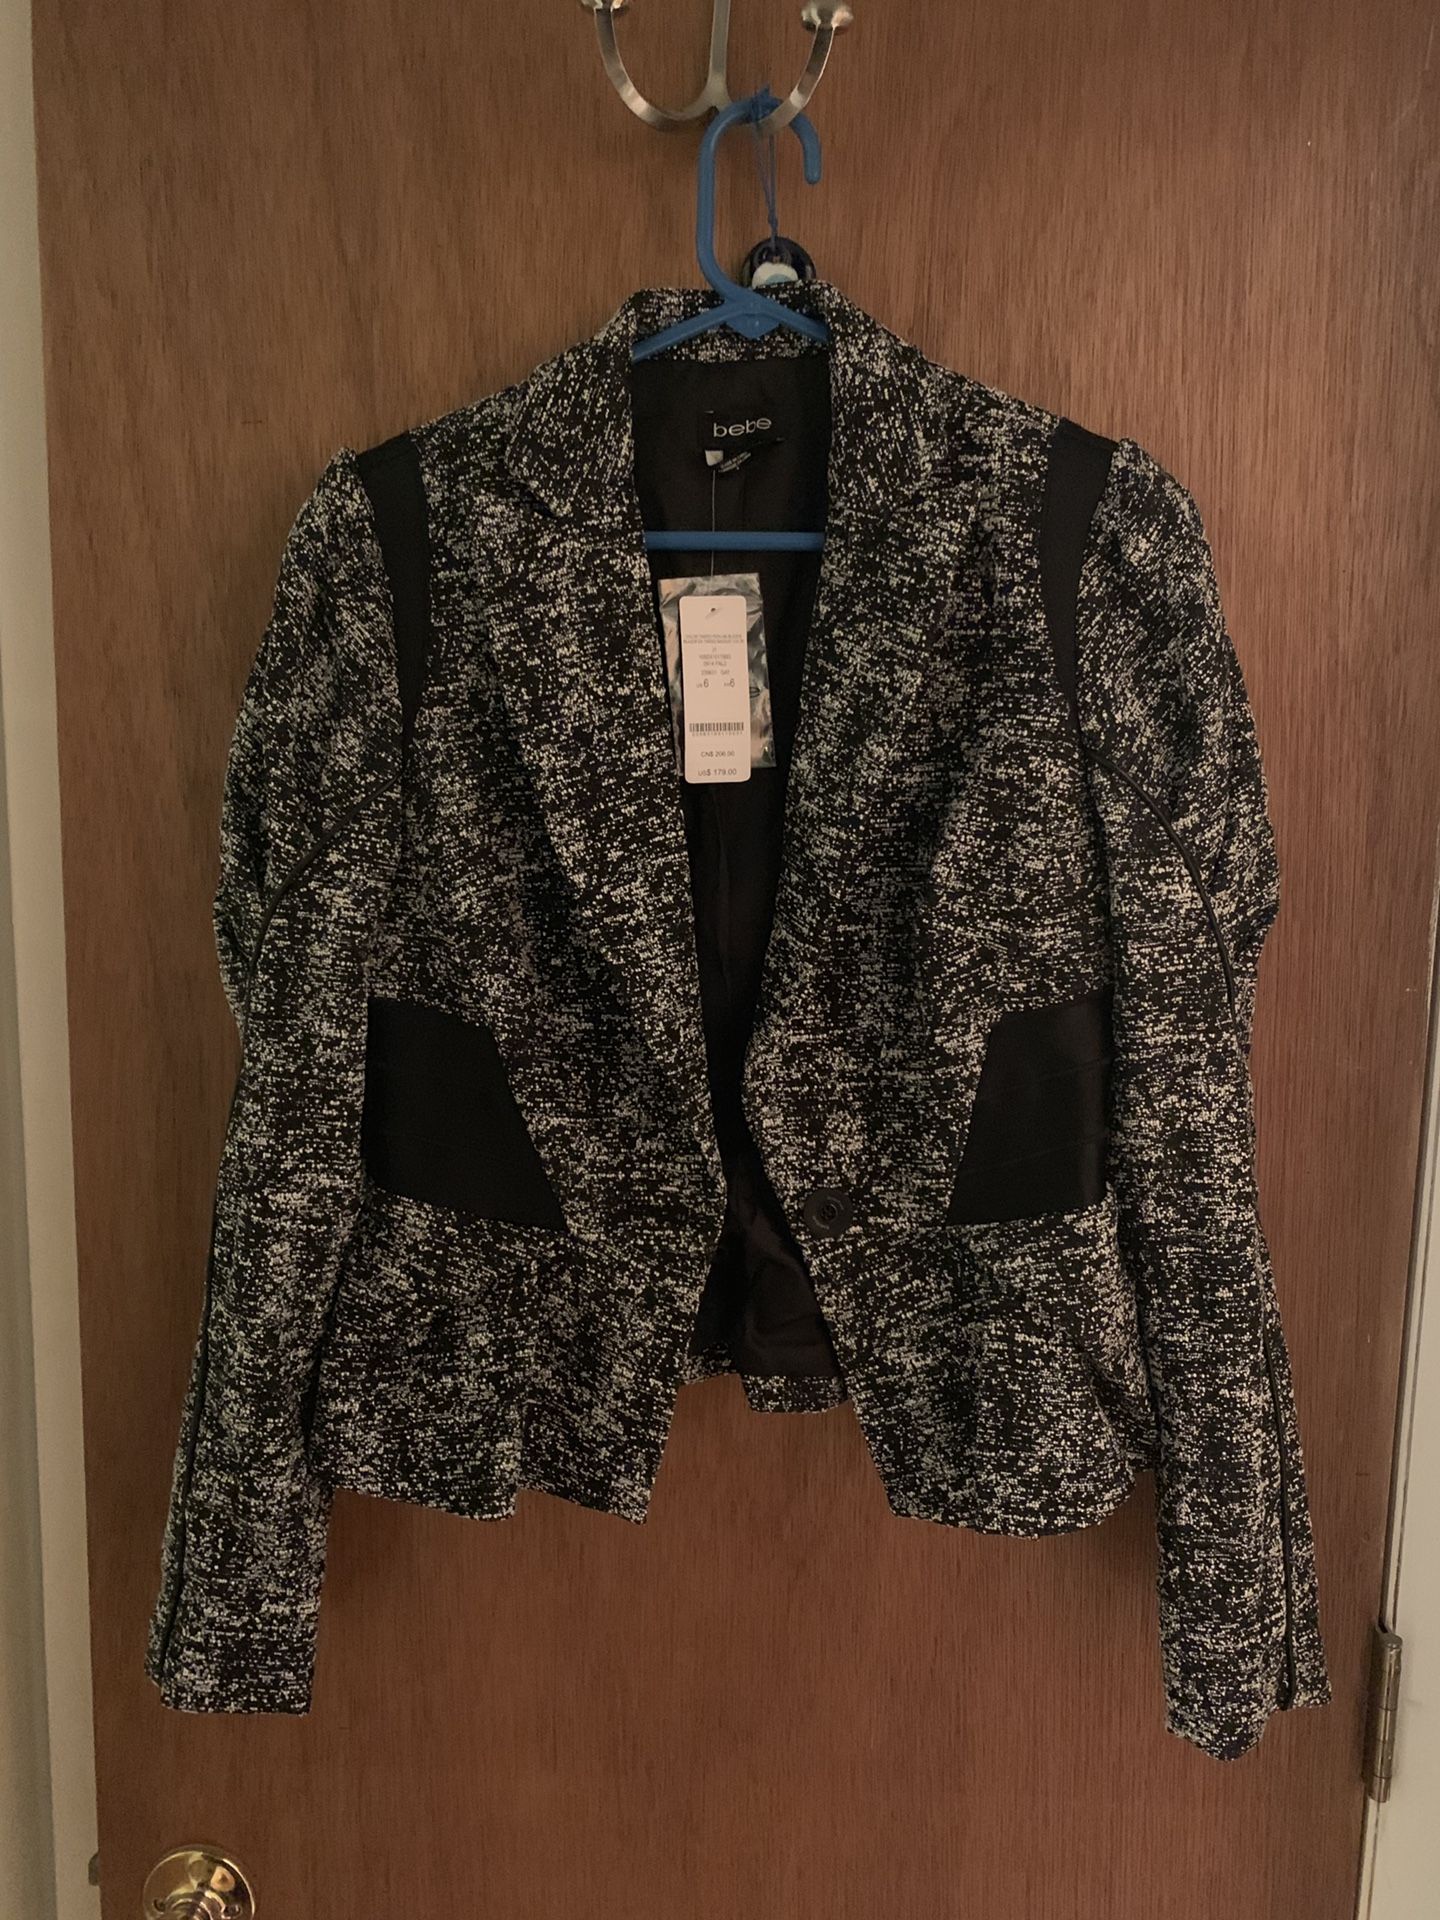 Bebe jacket size 6